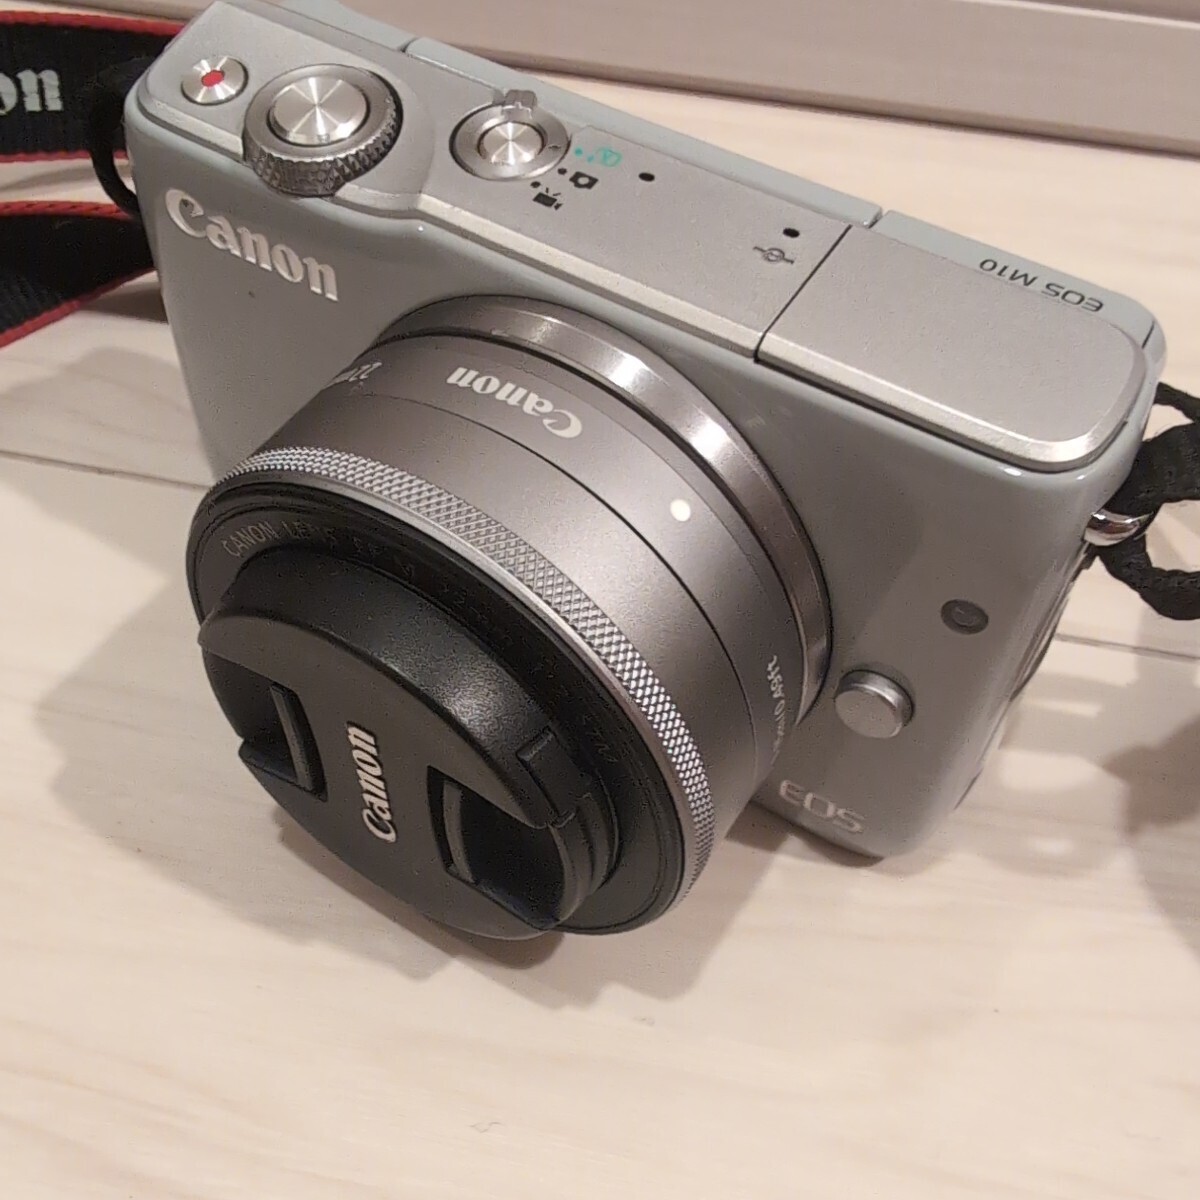 Canon キヤノン EOS M10 デジタルミラーレス一眼カメラセット [ズームレンズ EF-M15-45mm F3.5-6.3] [単焦点レンズ EF-M22mm F2]の画像2